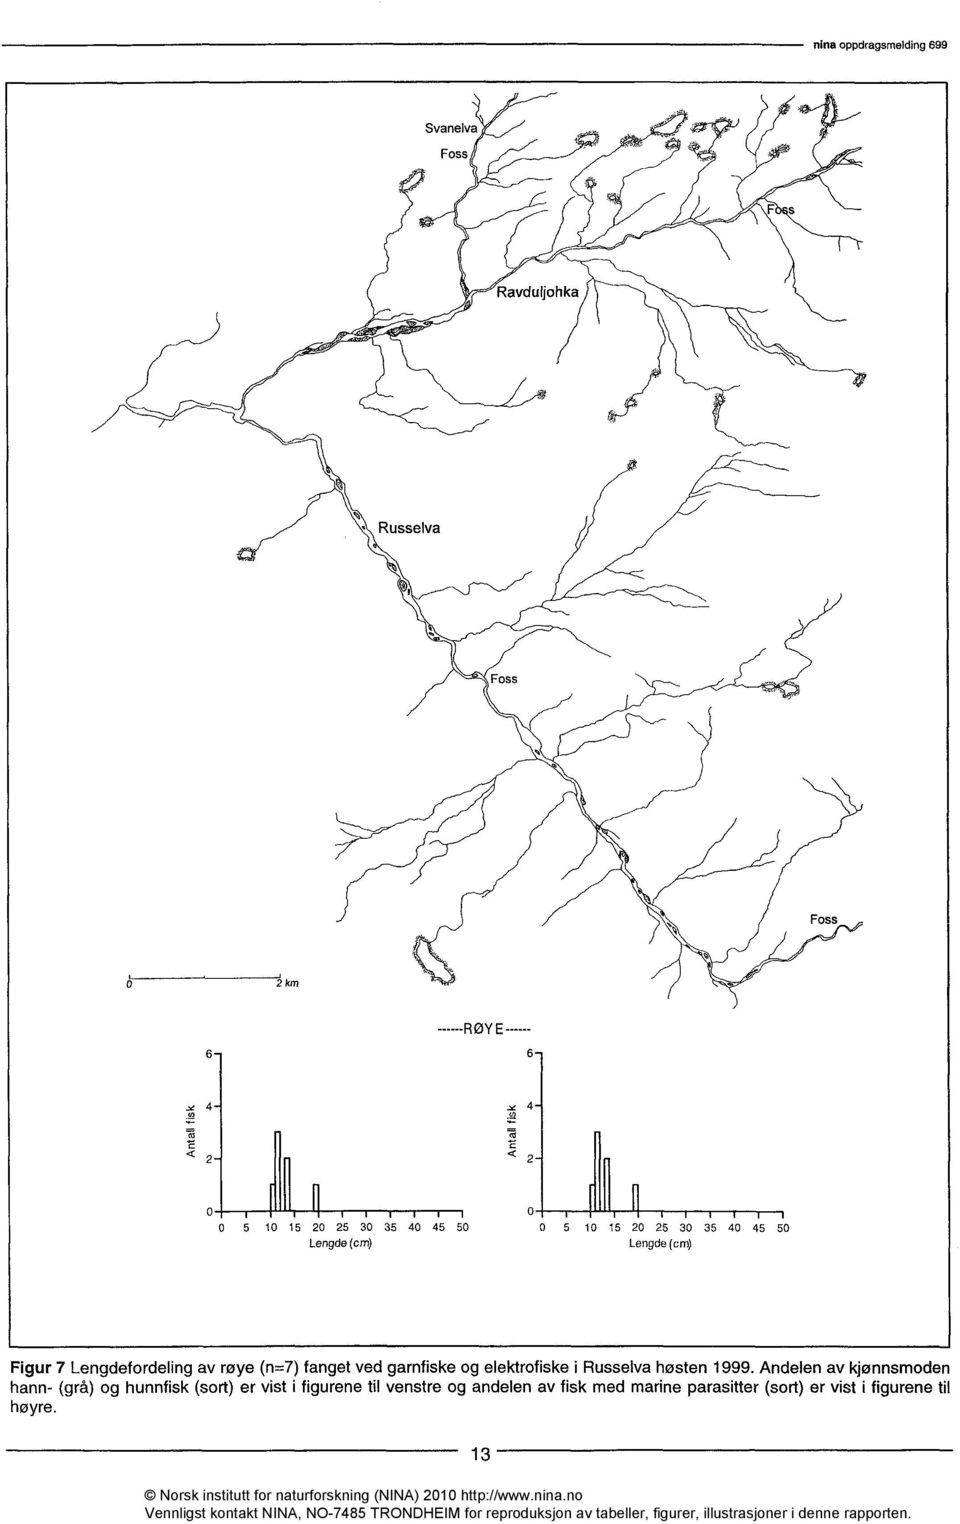 Lengdefordeling av røye (n=7) fanget ved garnfiske og elektrofiske i Russelva høsten 1999.